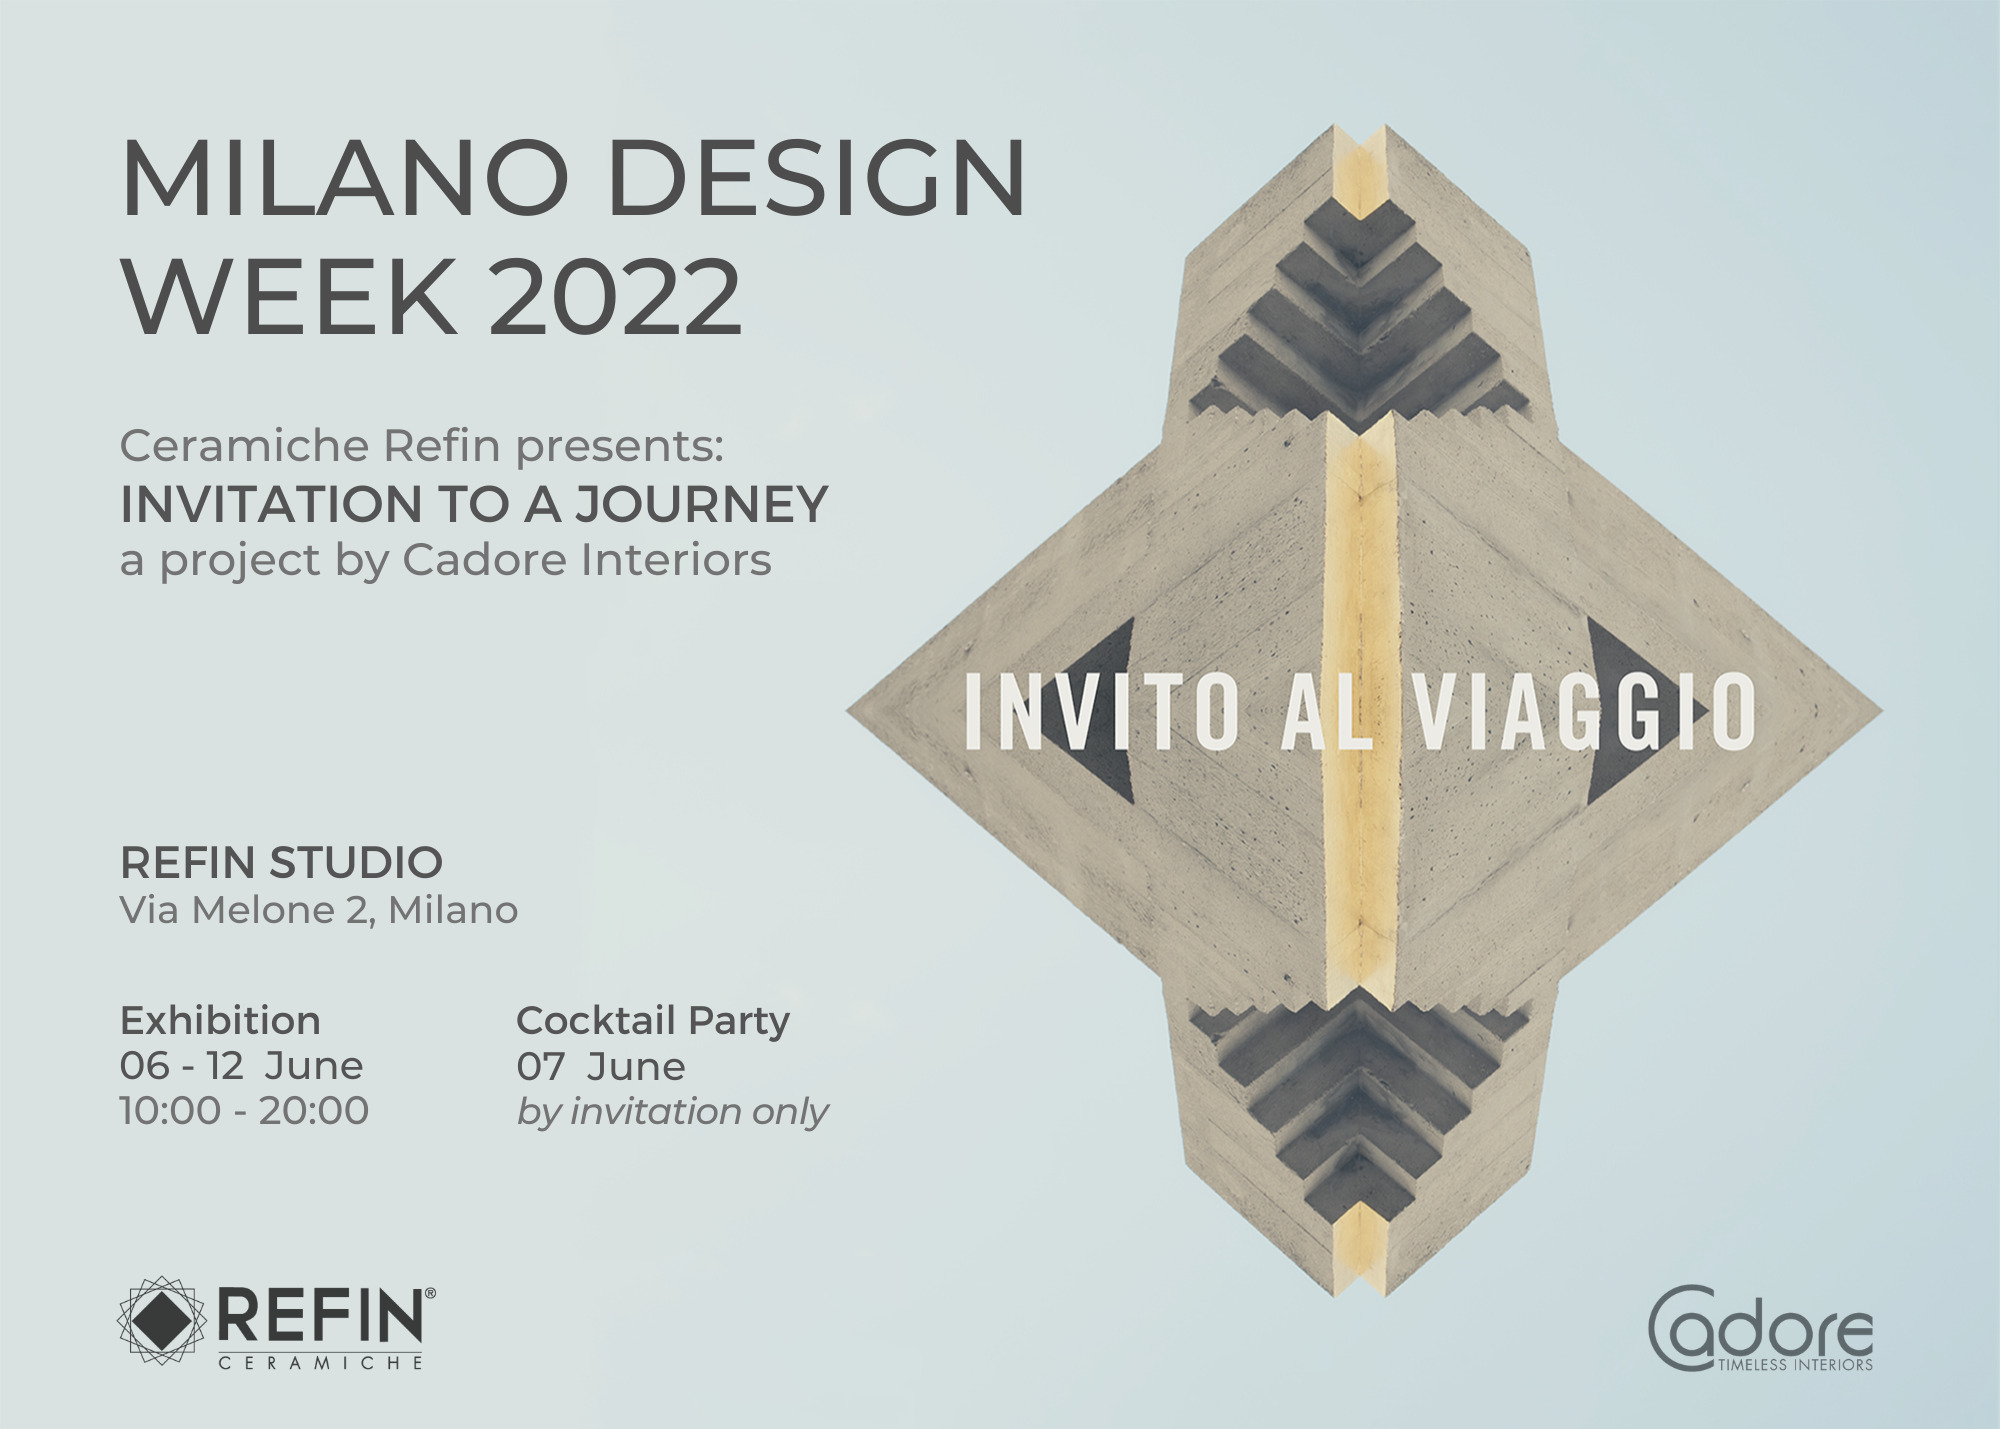 milano design week